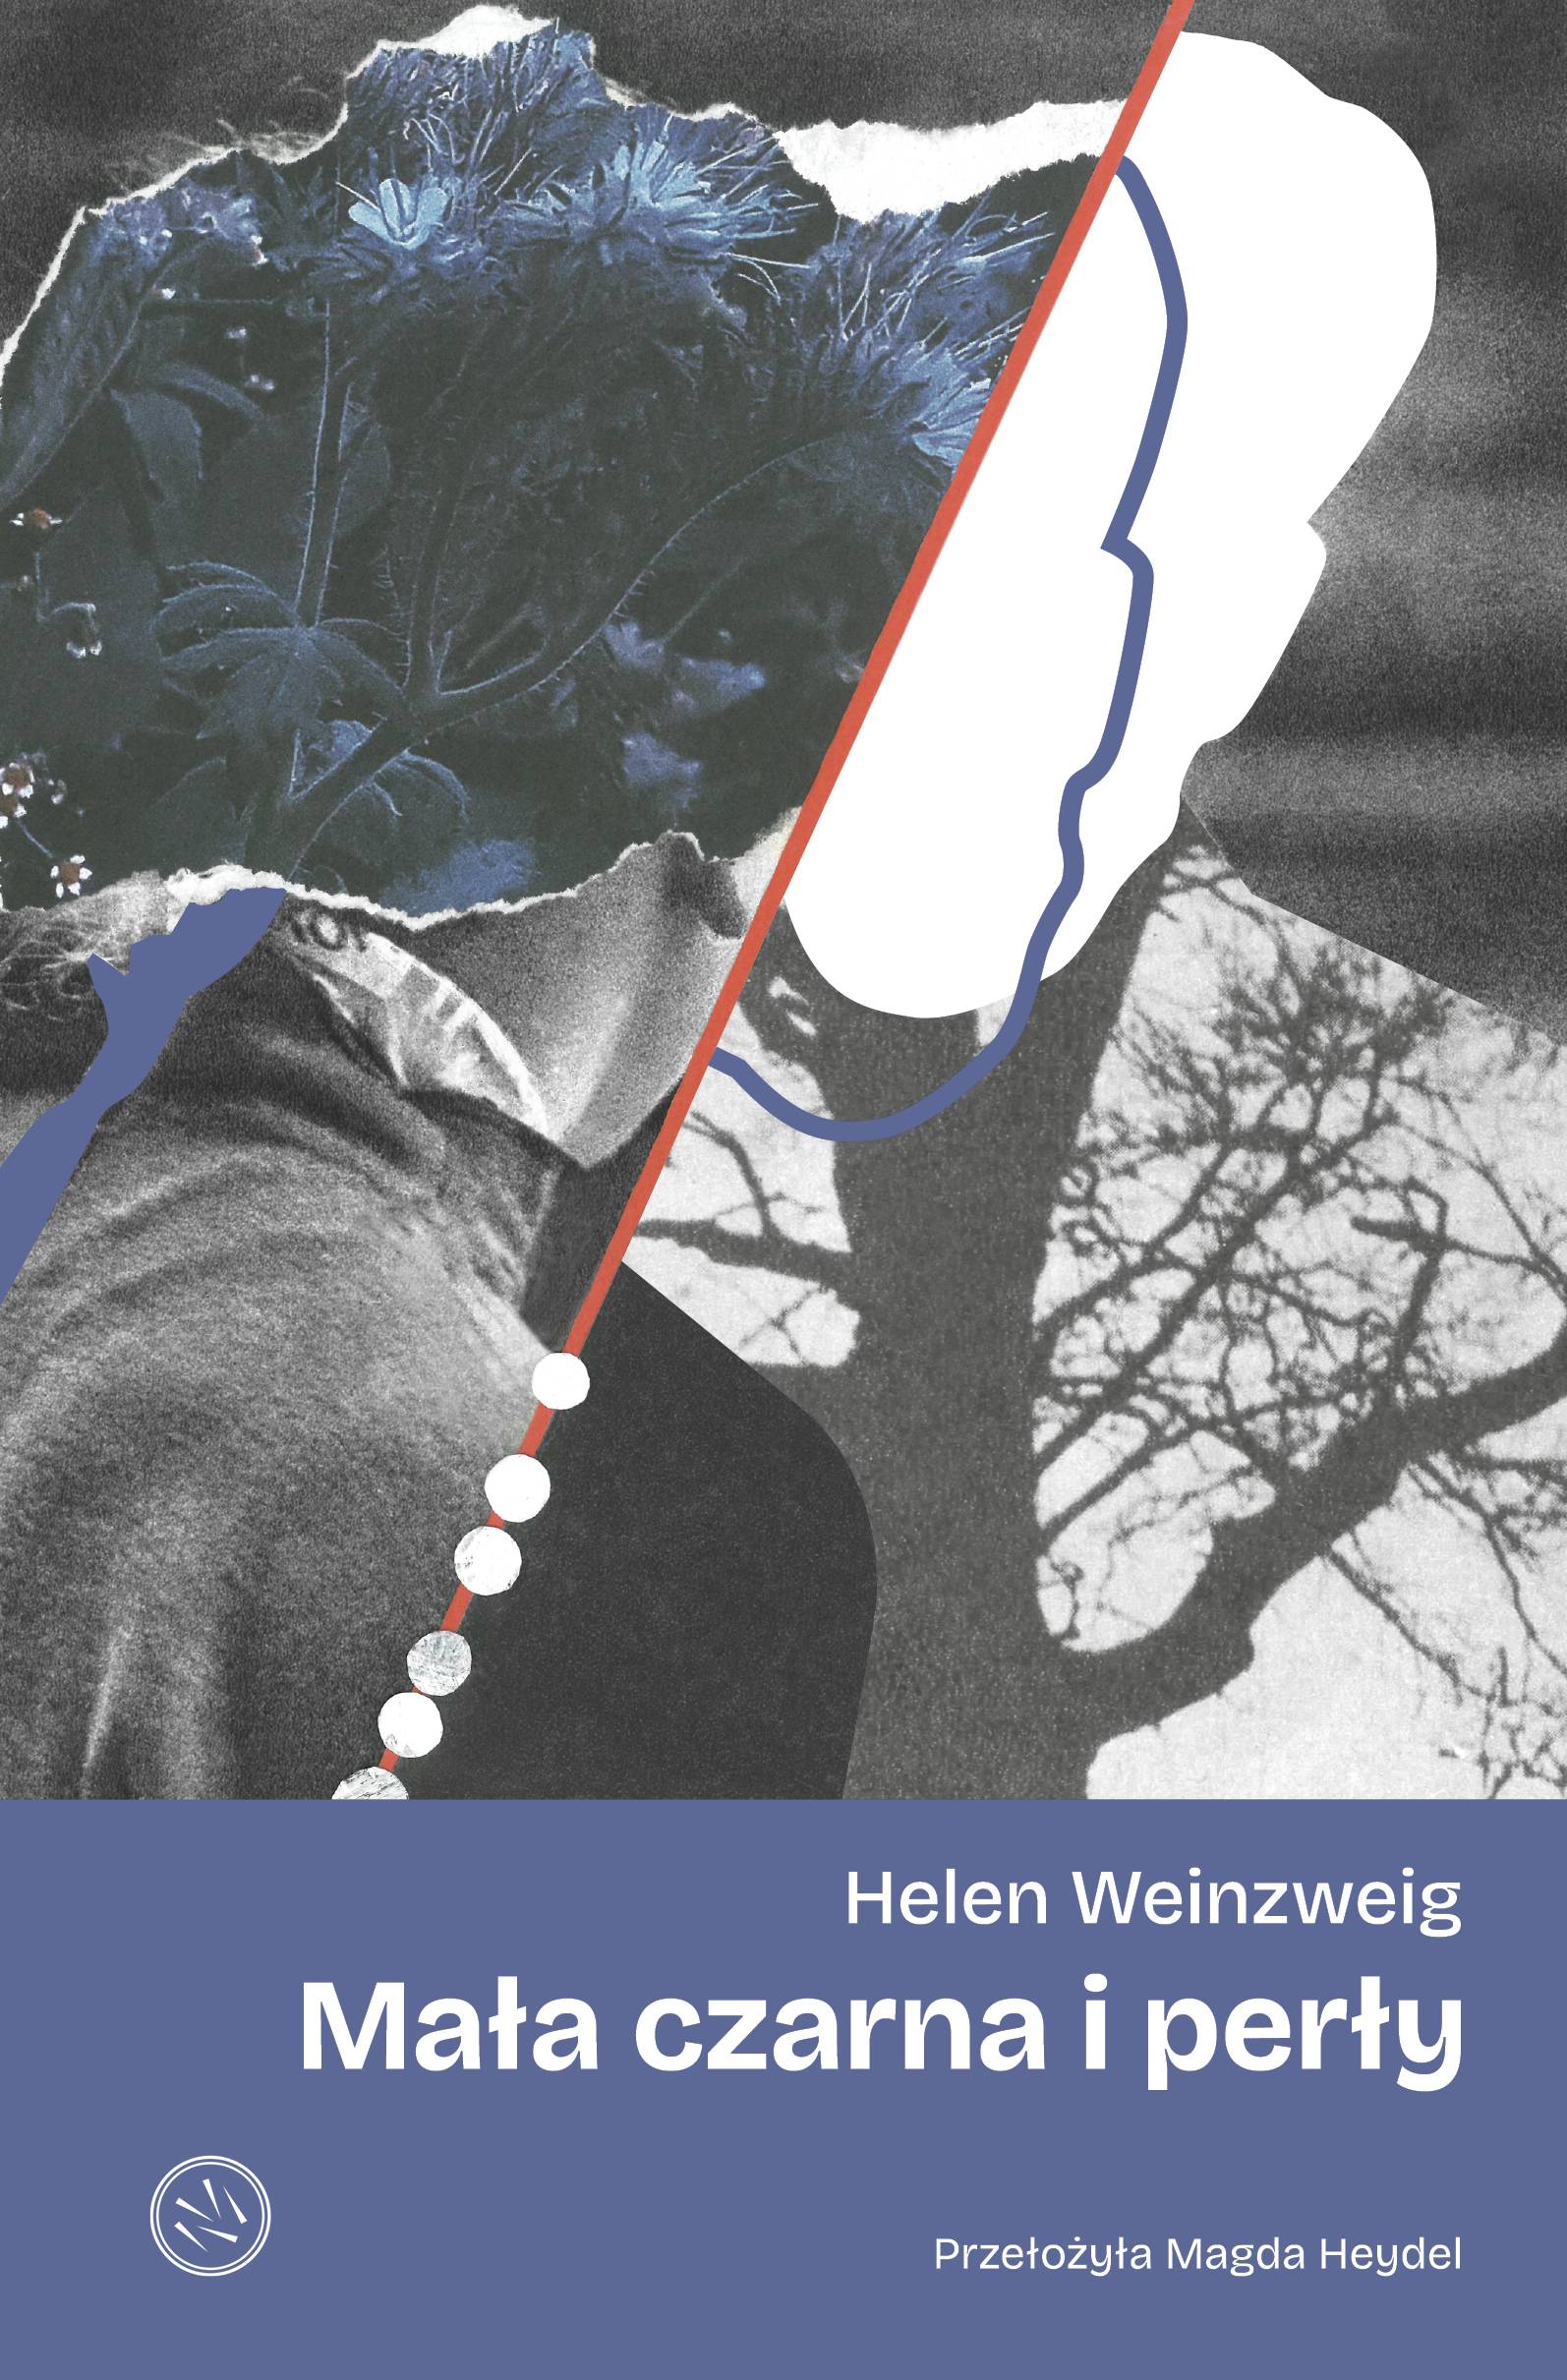 Helen Weinzweig, „Mała czarna i perły”, przekład z angielskiego Magda Heydel, wydawnictwo Drzazgi